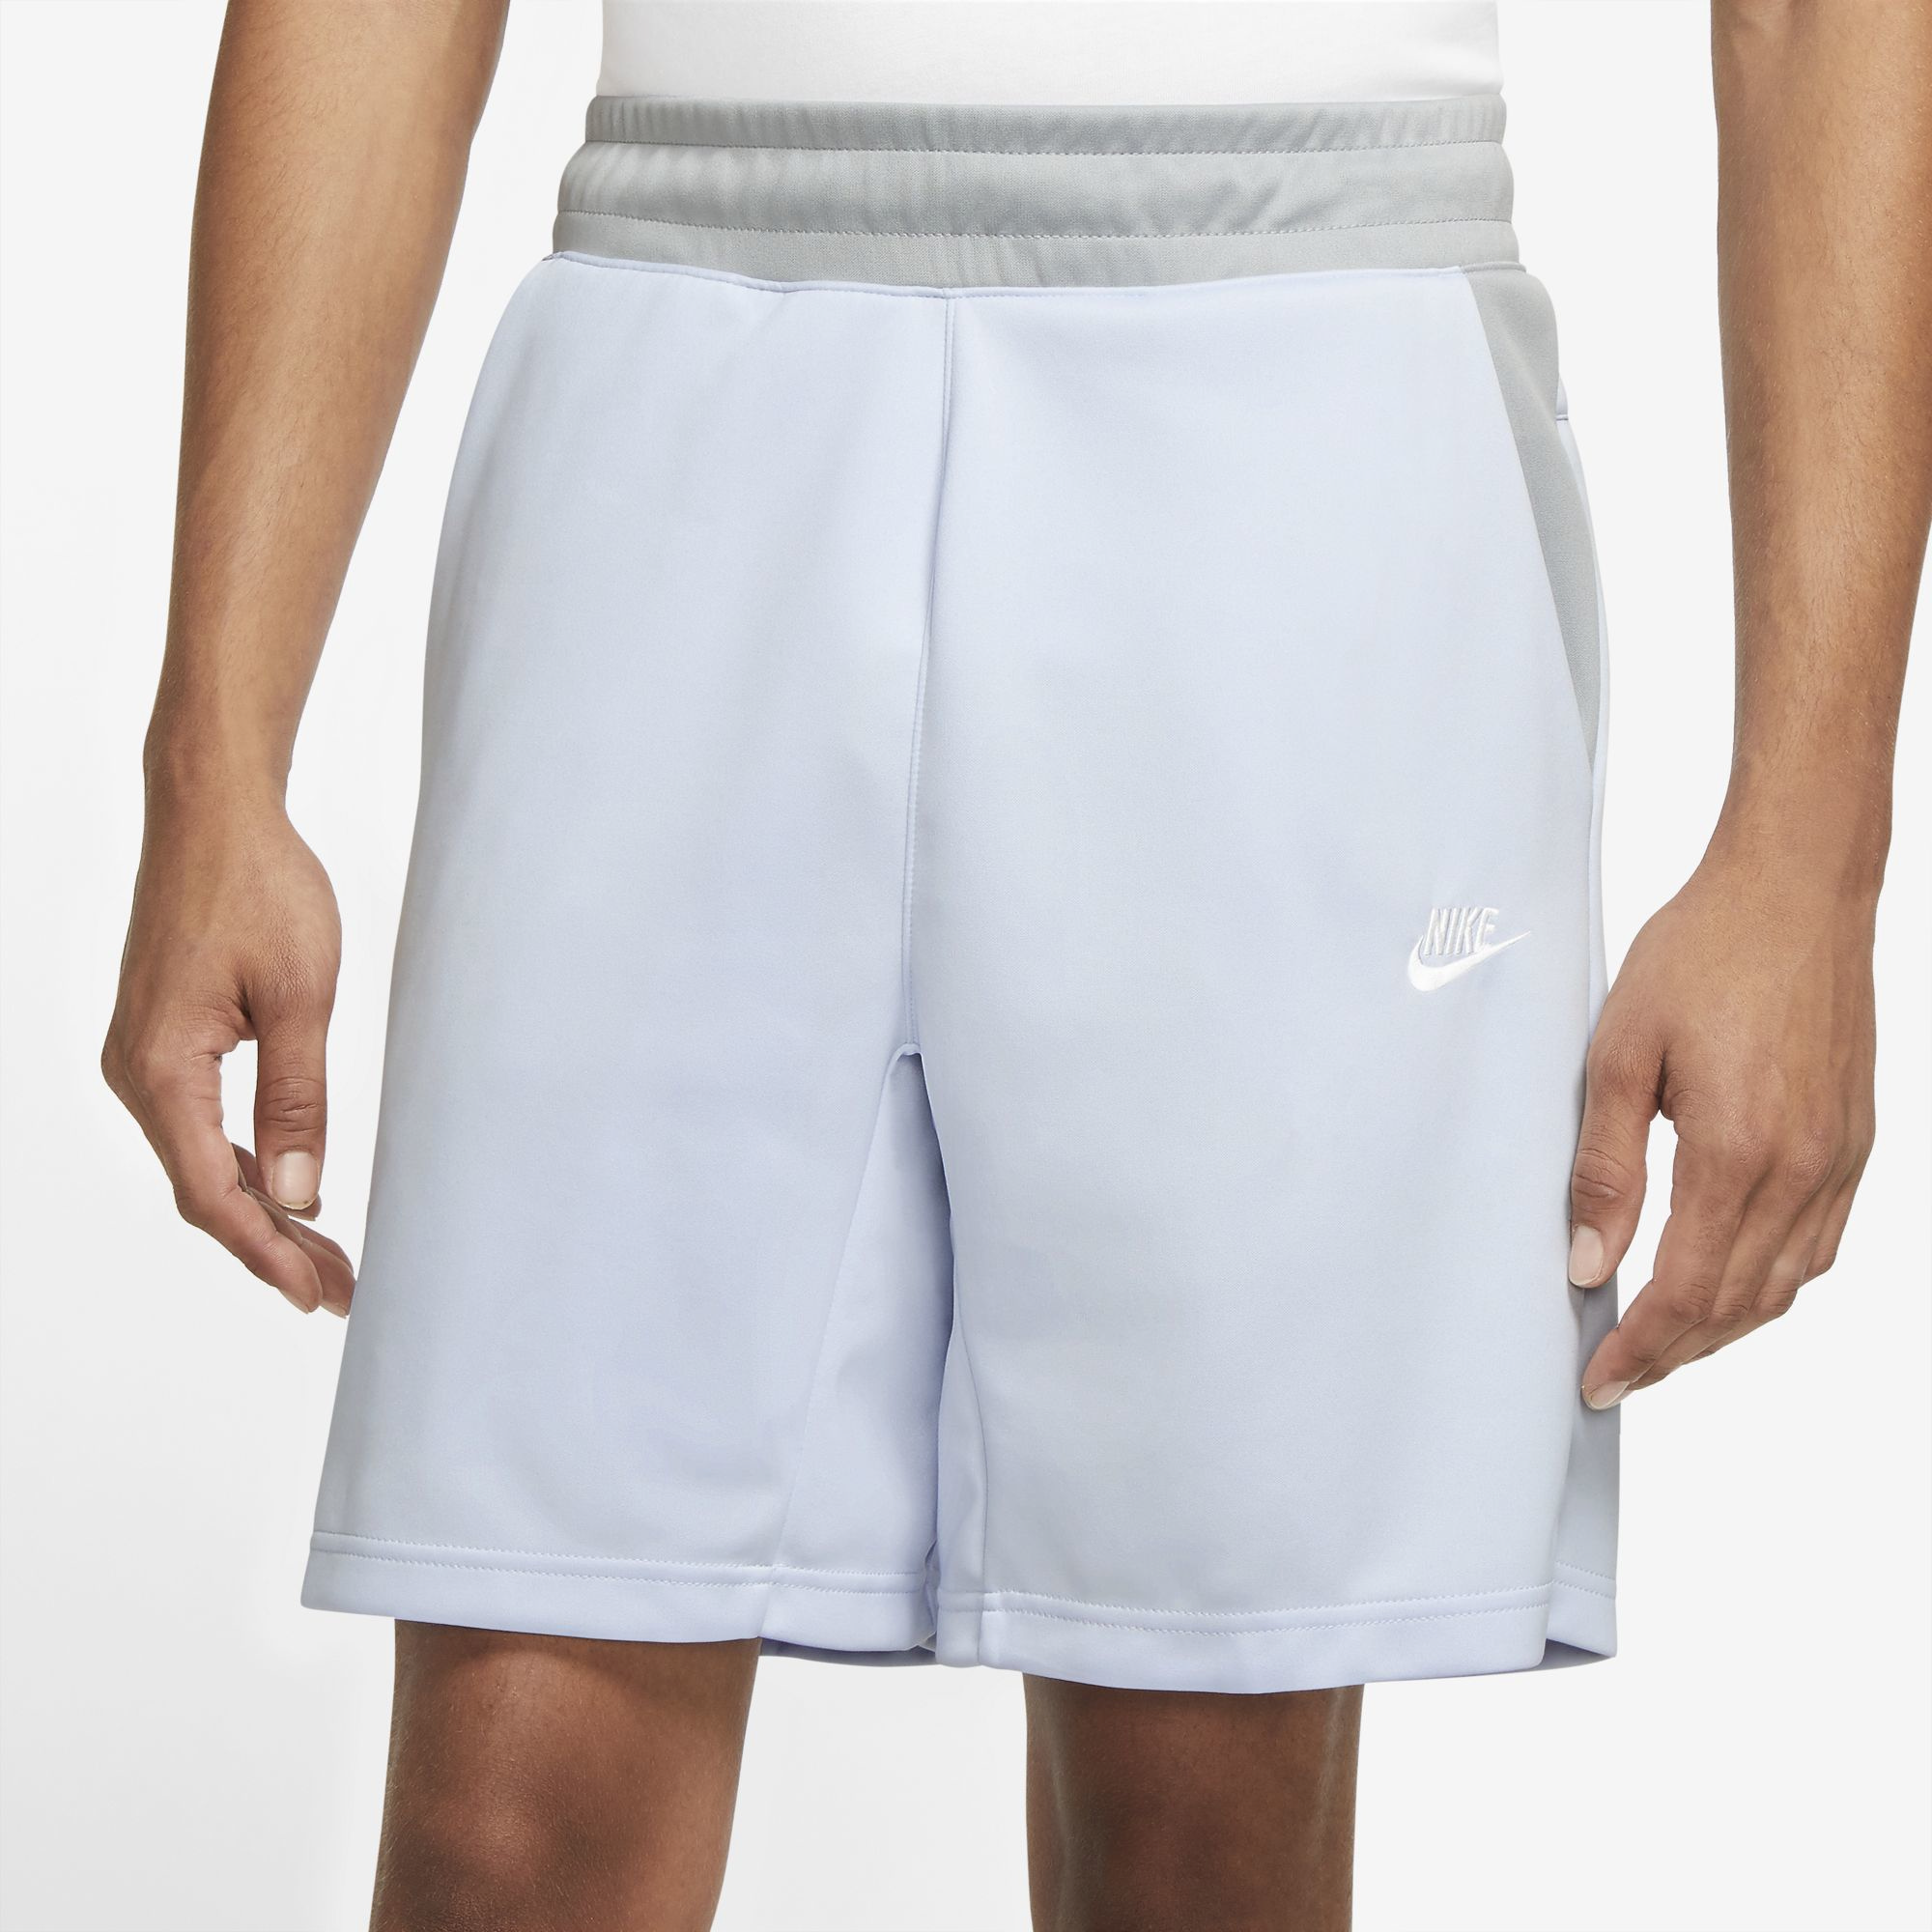 Nike Tribute Shorts - Men's